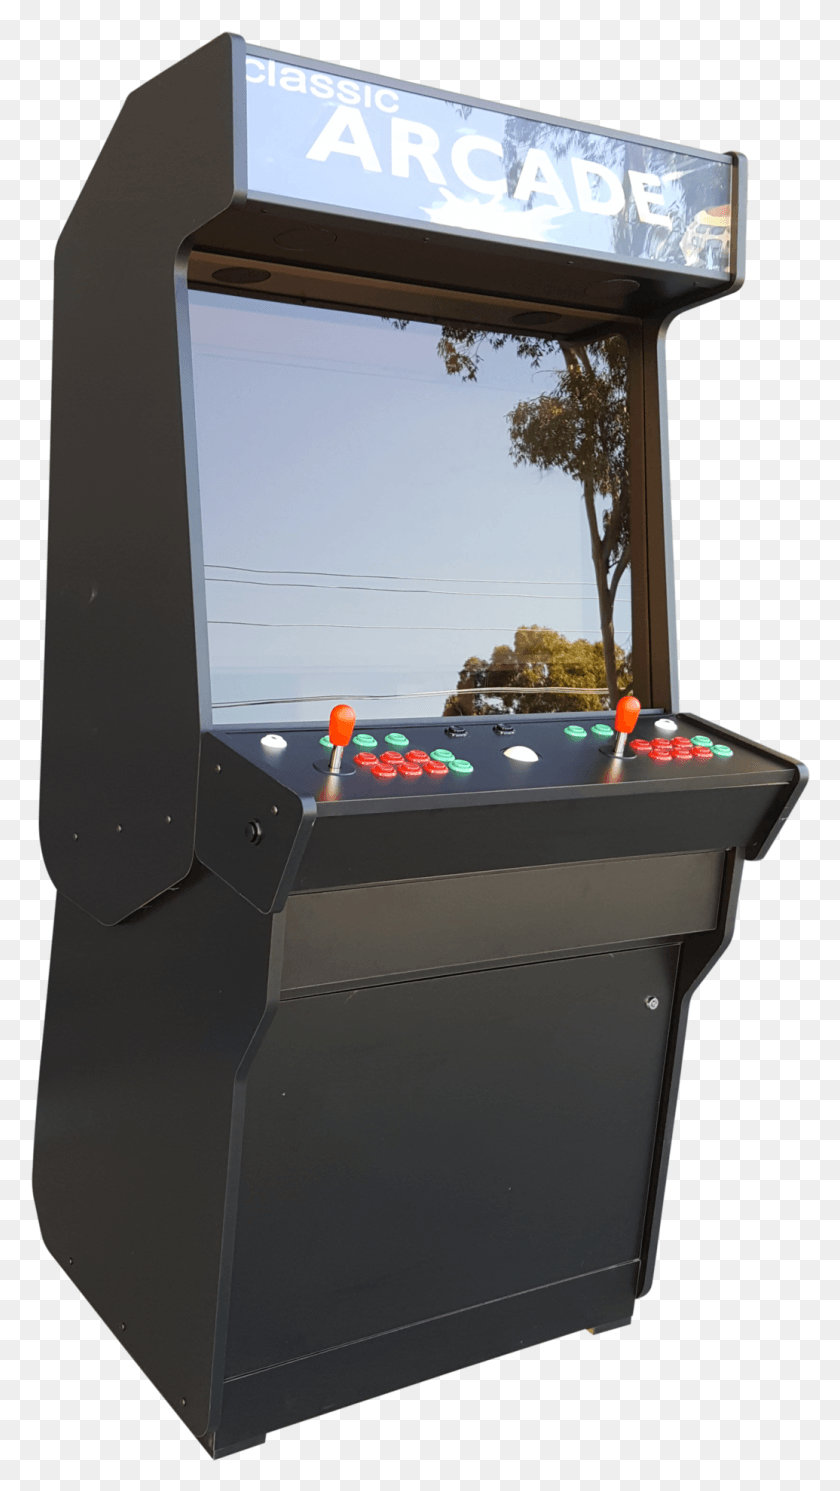 1035x1899 Descargar Png Arcade Dibujo Construir En El Gabinete Arcade Machine Cabinet, Arcade Game Machine Hd Png